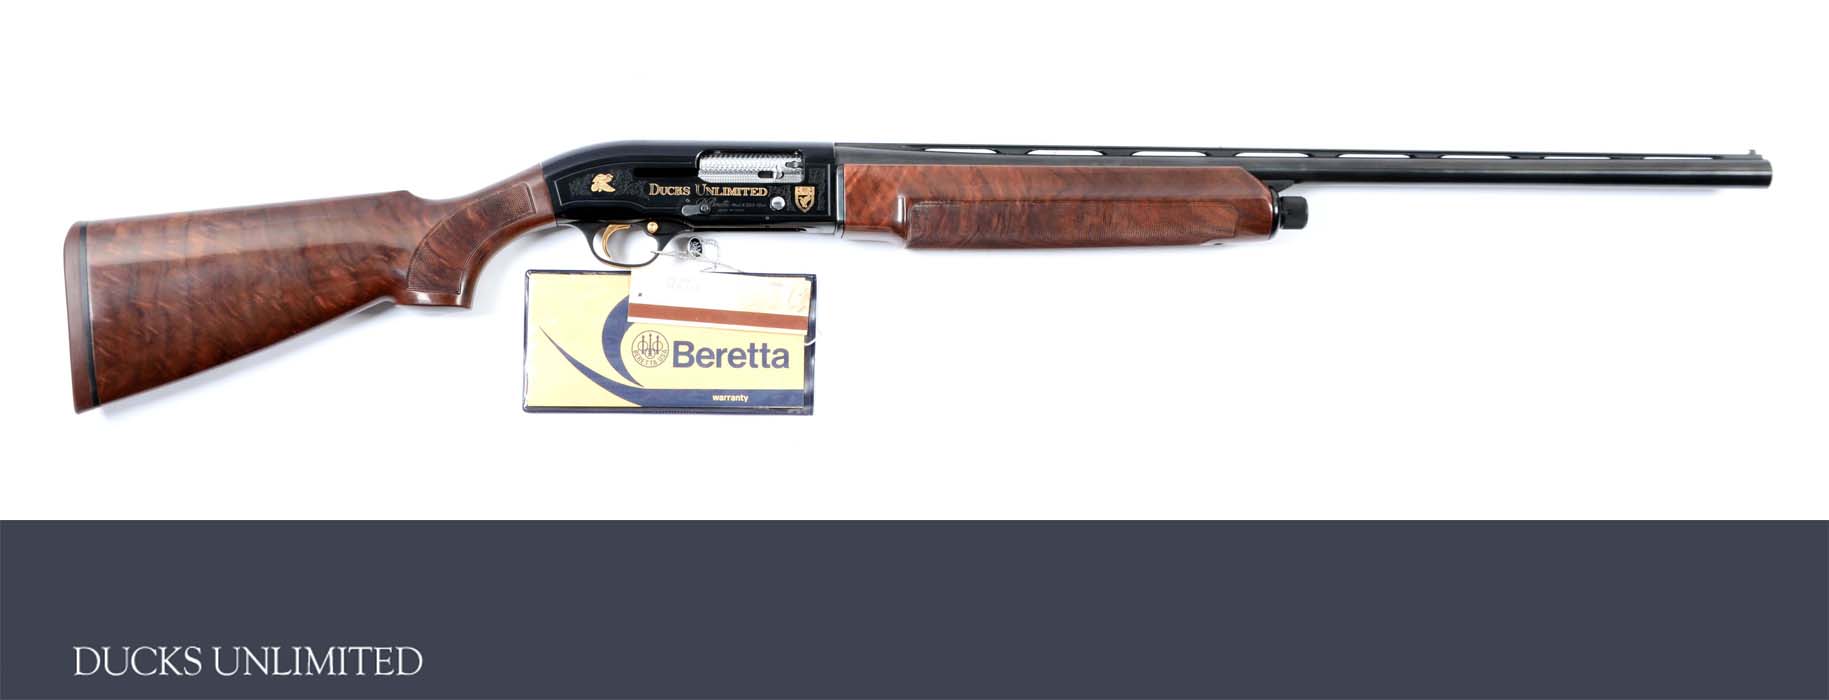 Lot Detail M Beretta Model A 303 Ducks Unlimited 1986 Semi Automatic Shotgun